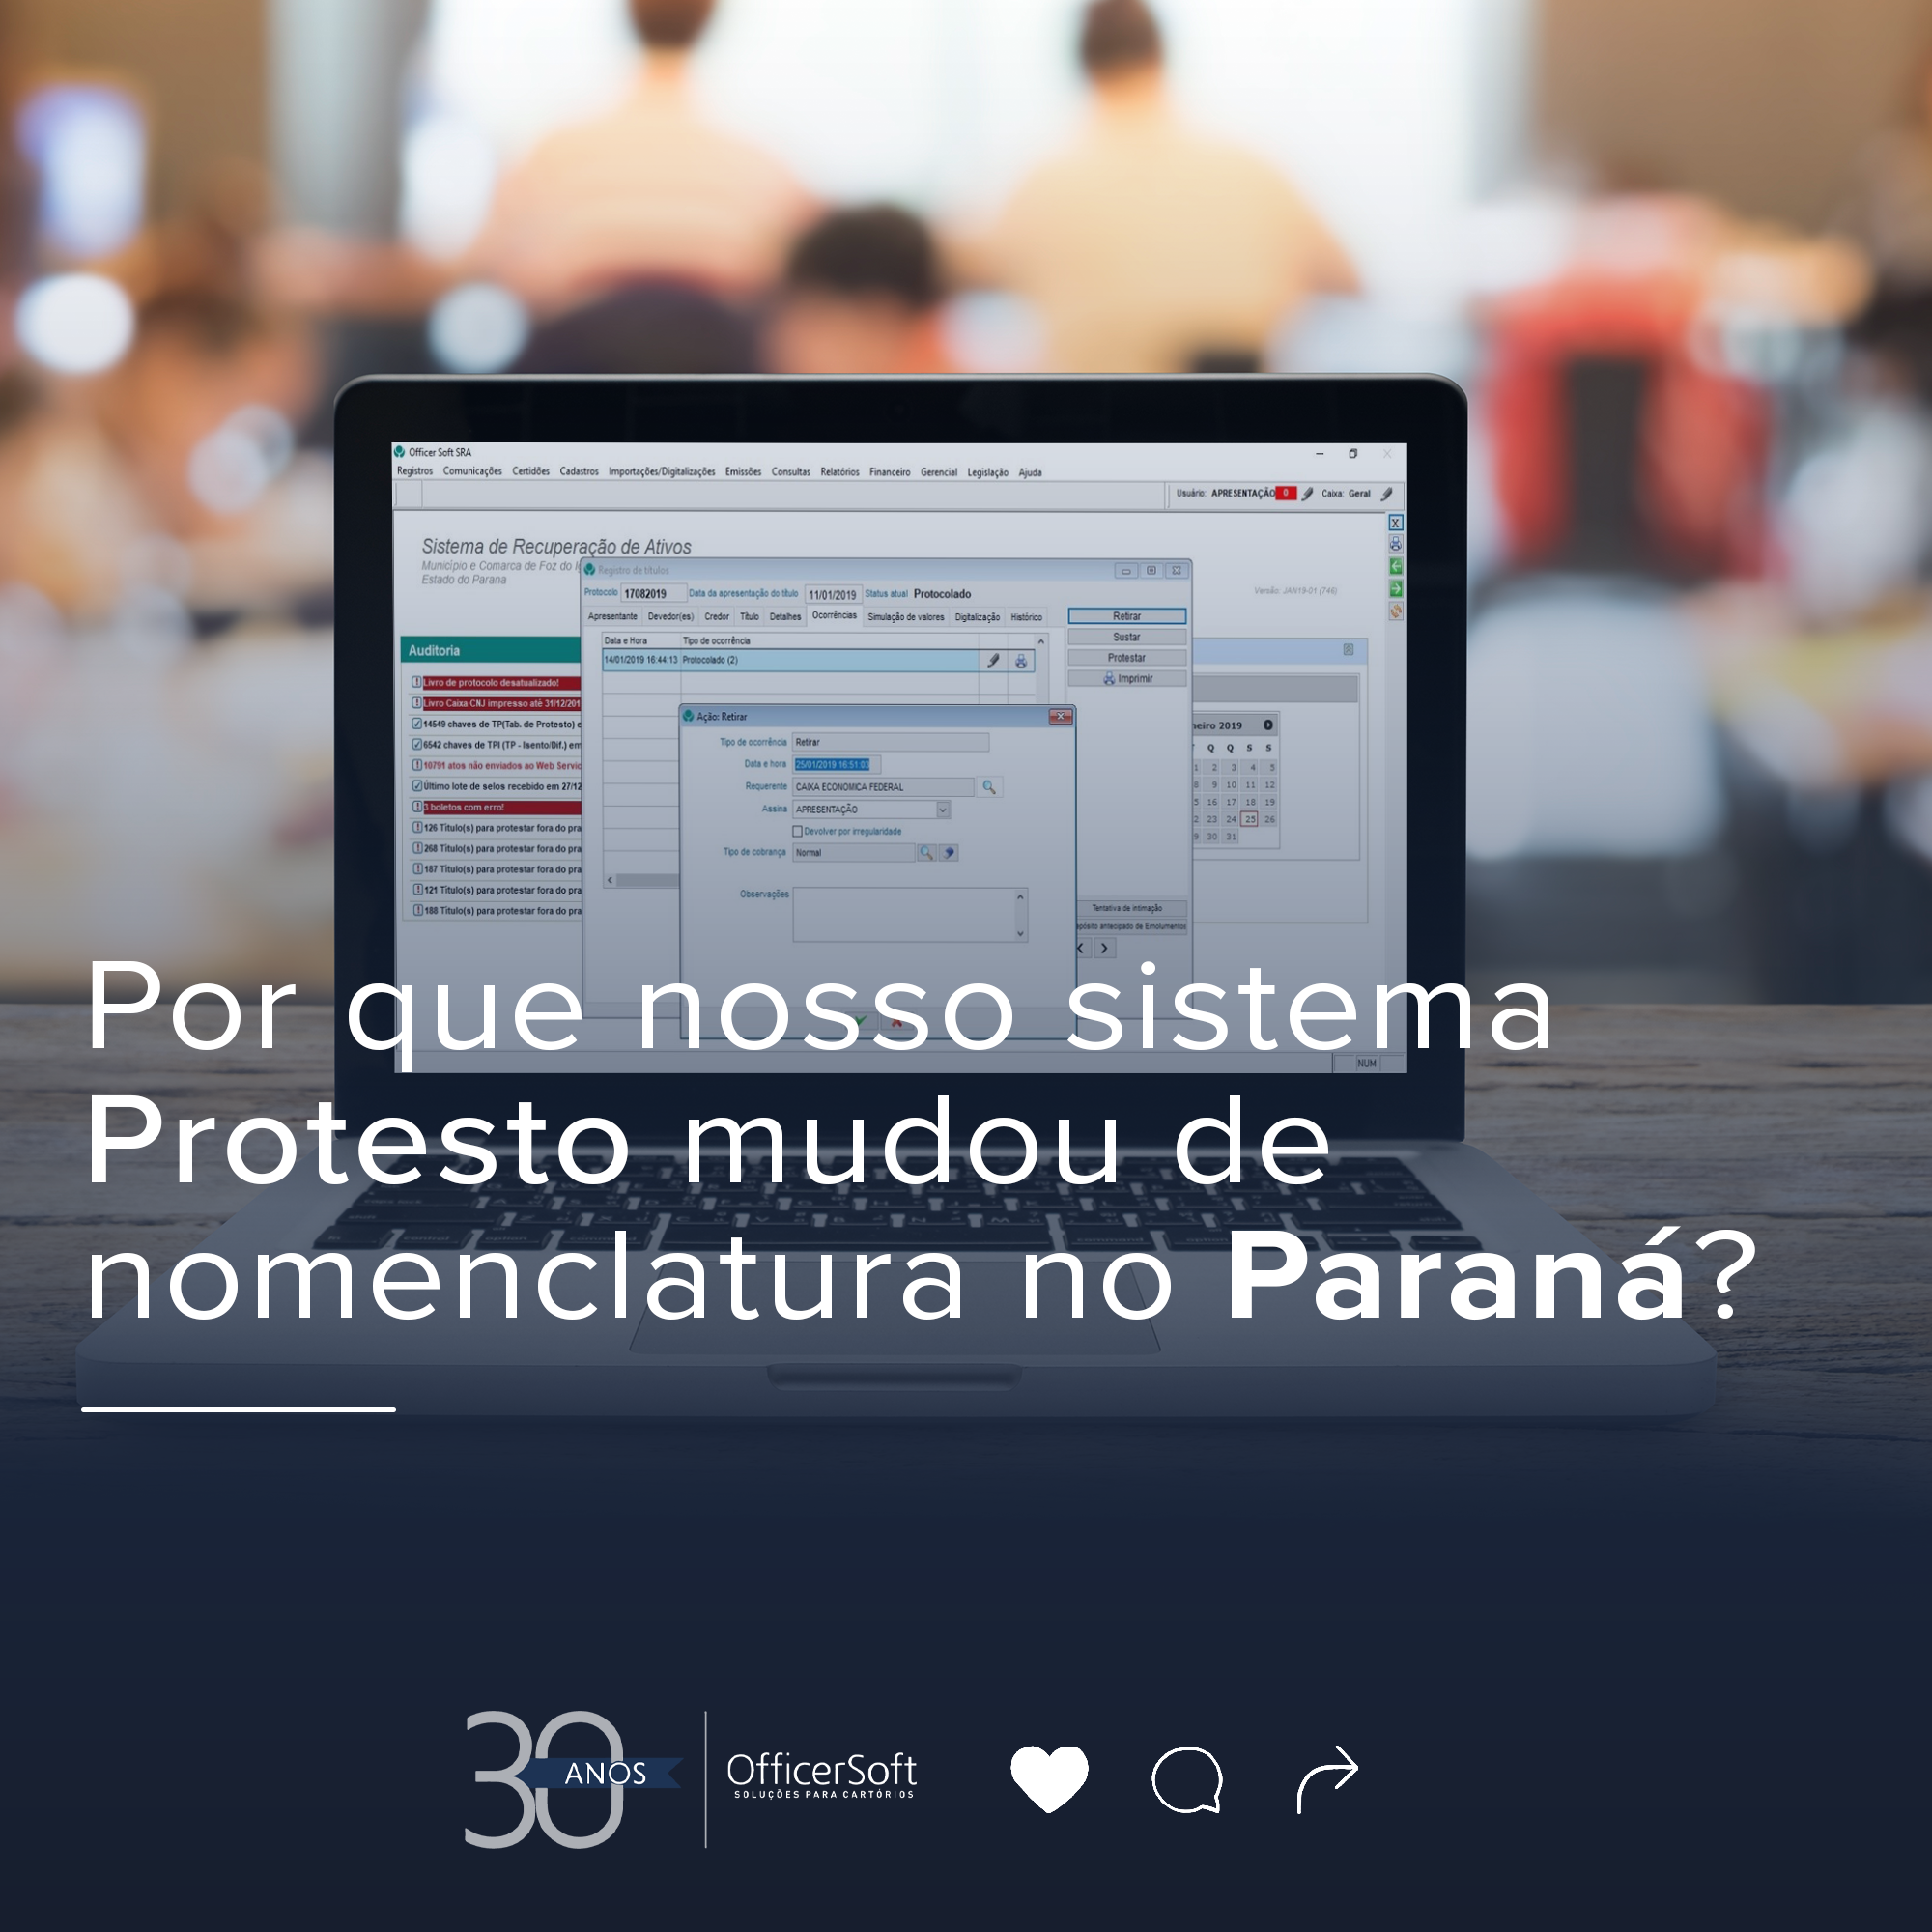 Por que o nosso sistema Protesto mudou de nomenclatura no Paraná?